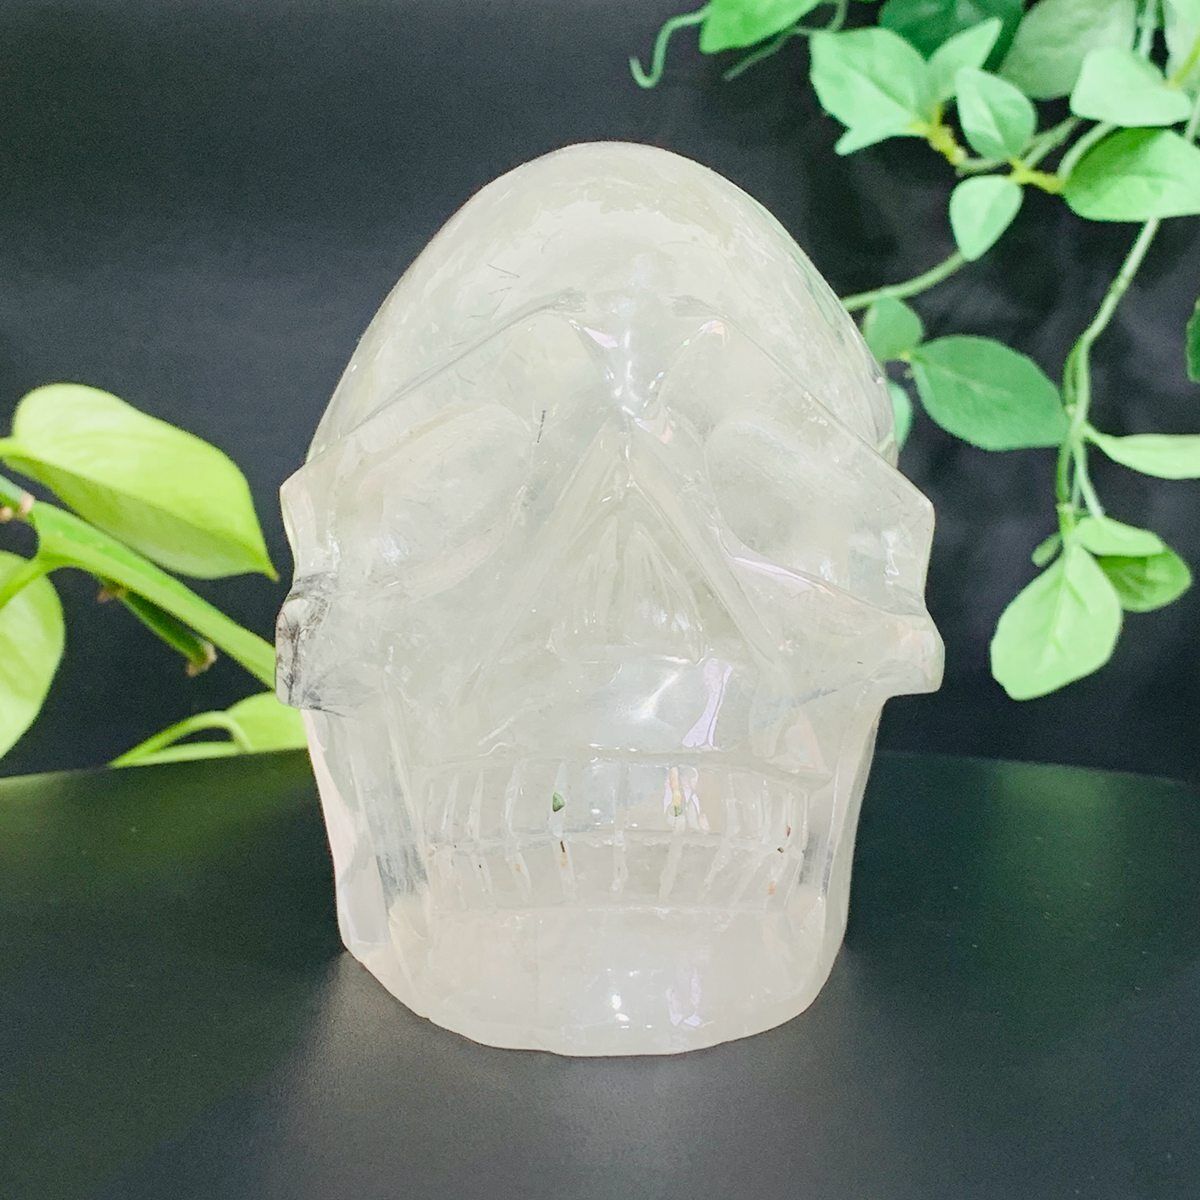 1603g Natural White Crystal Hand Carved Crystal Skull Quartz Meditation Medium